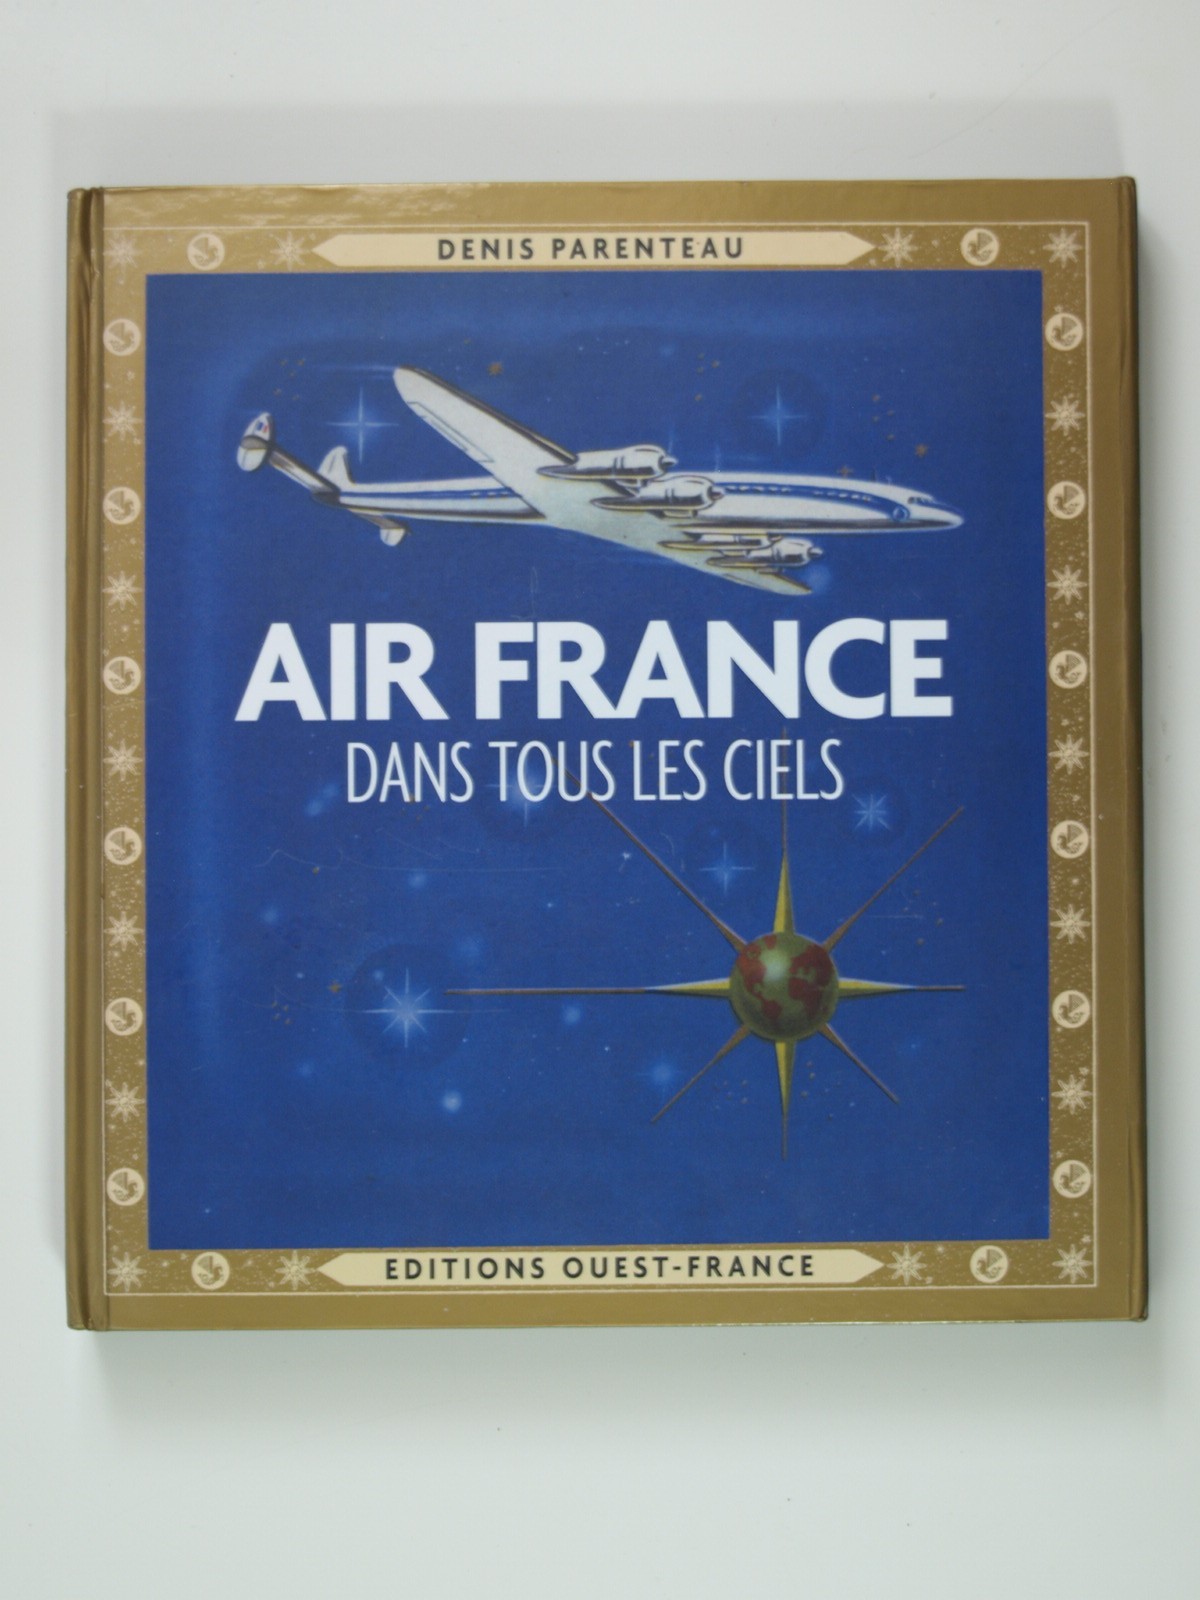 Parenteau Denis : Air France dans tous les ciels